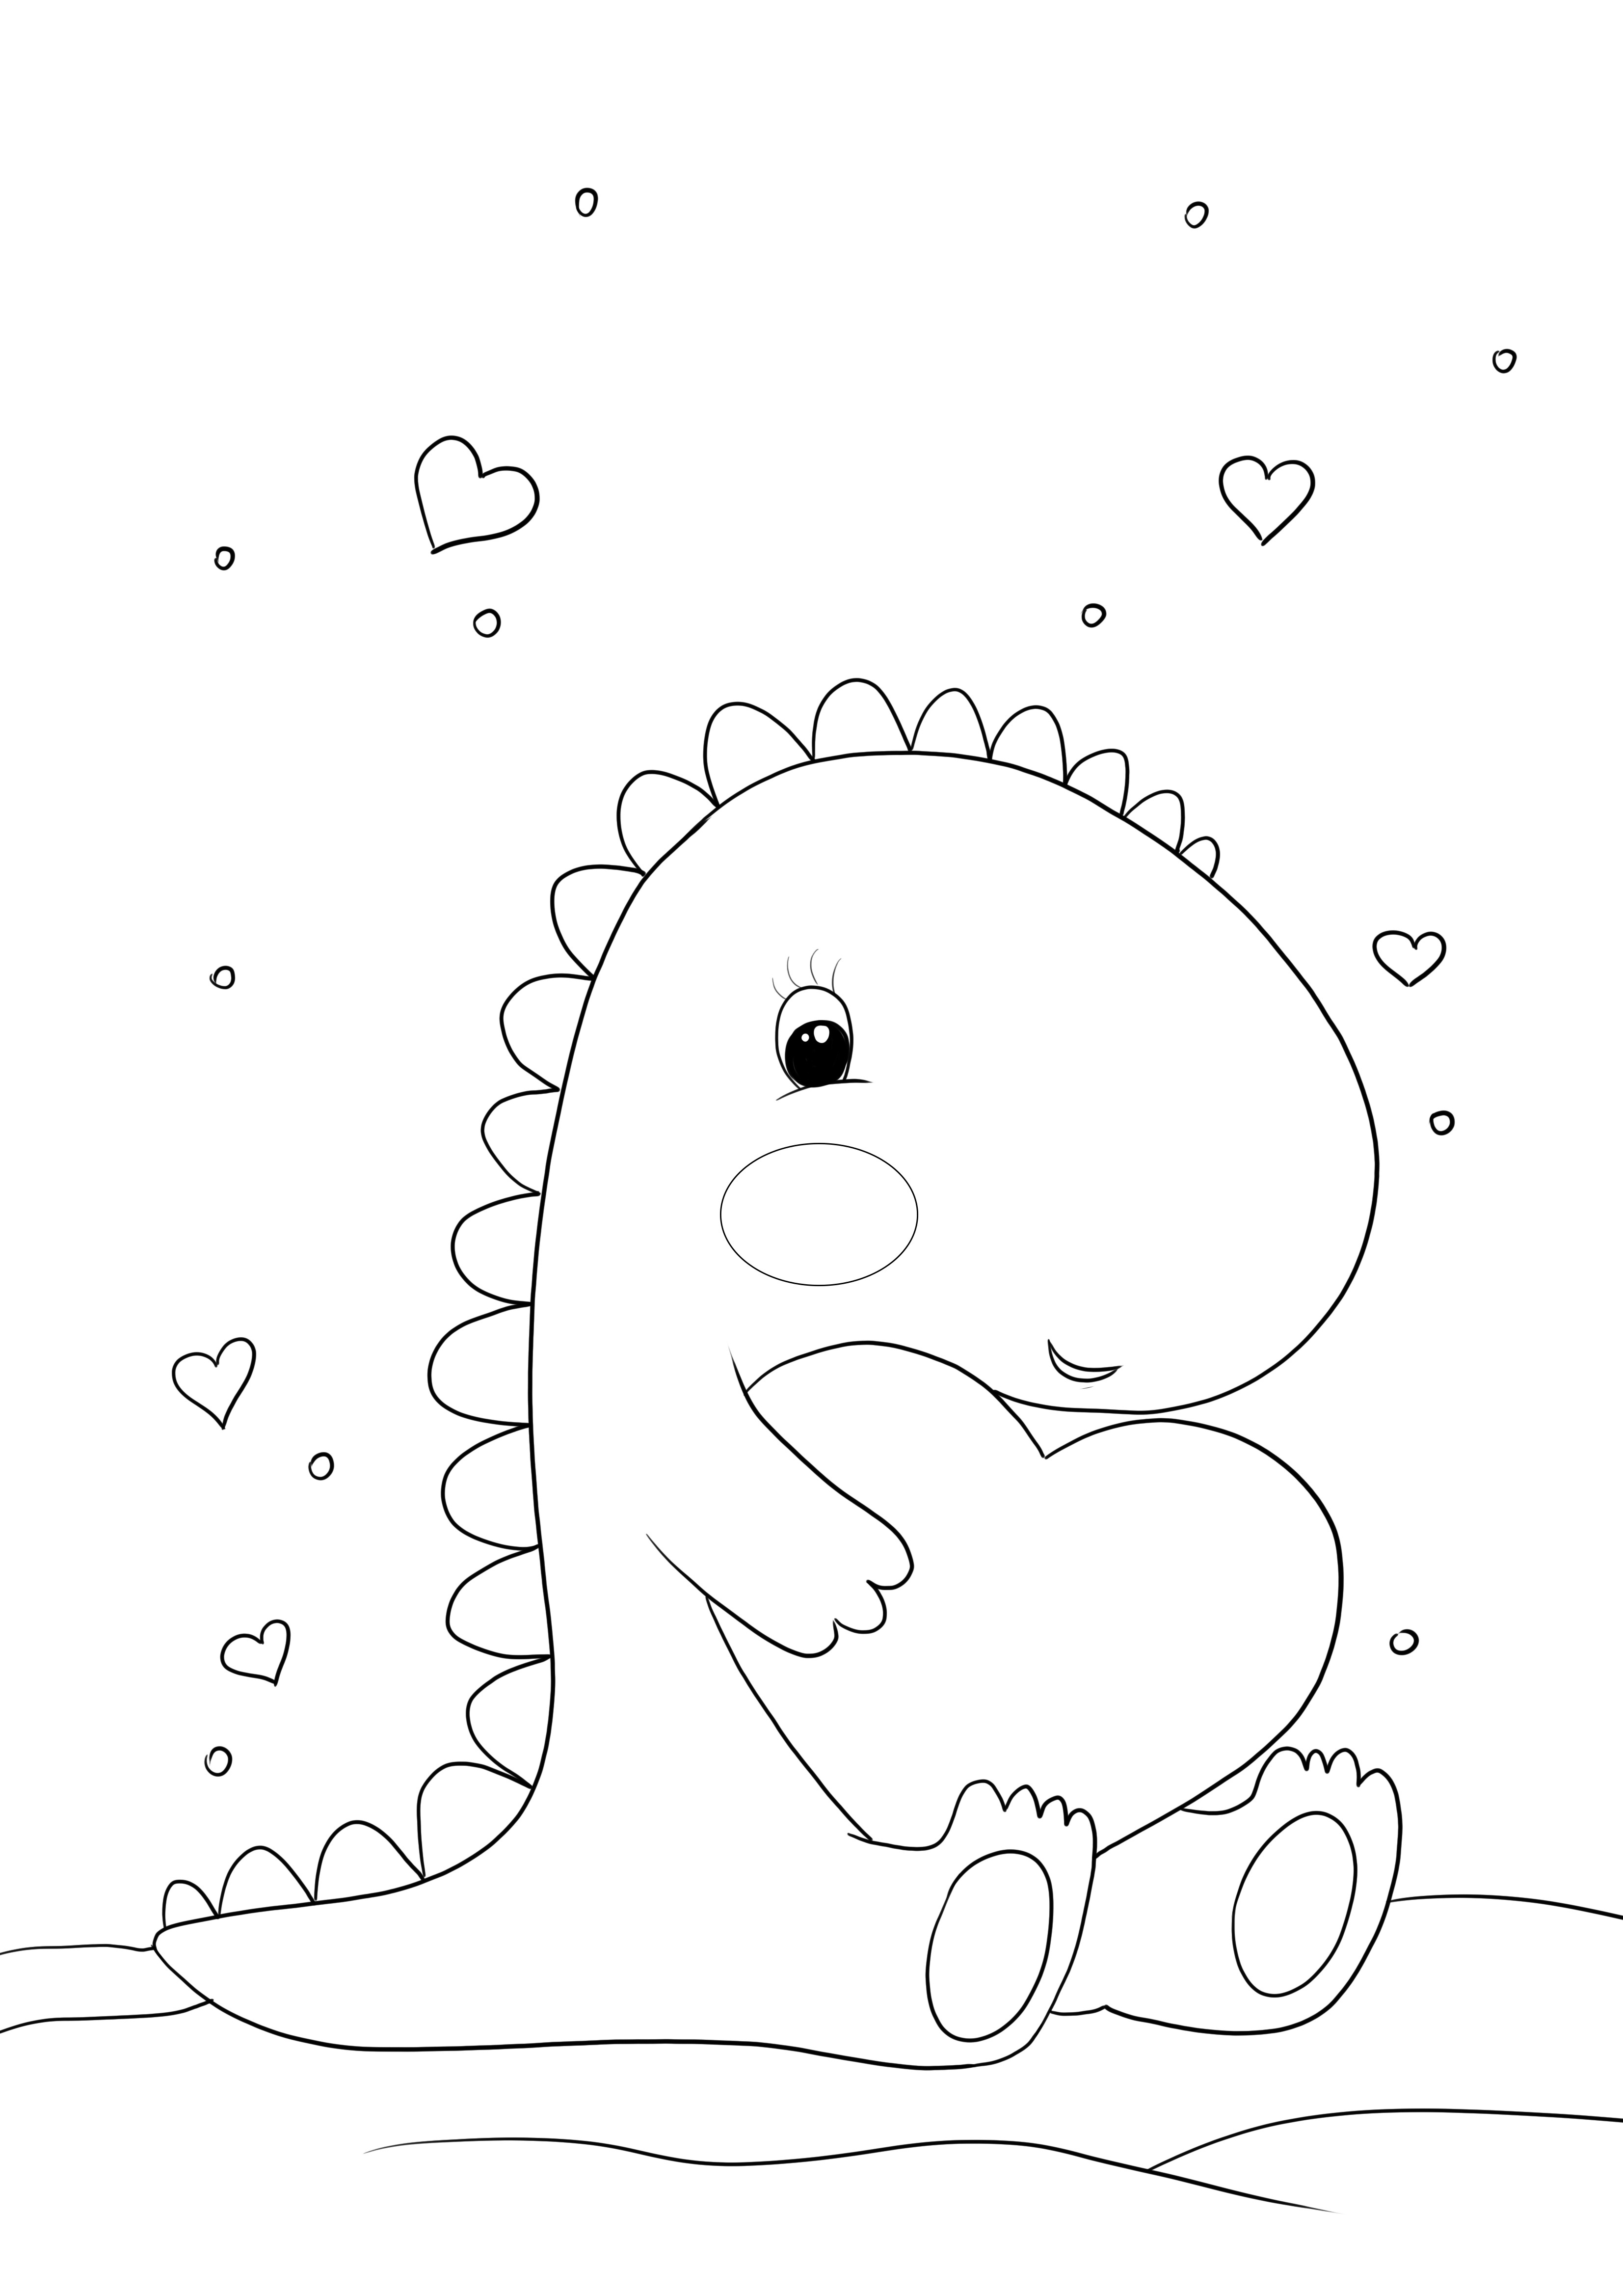 Dinossauro kawaii com coração para imprimir e colorir grátis para página infantil